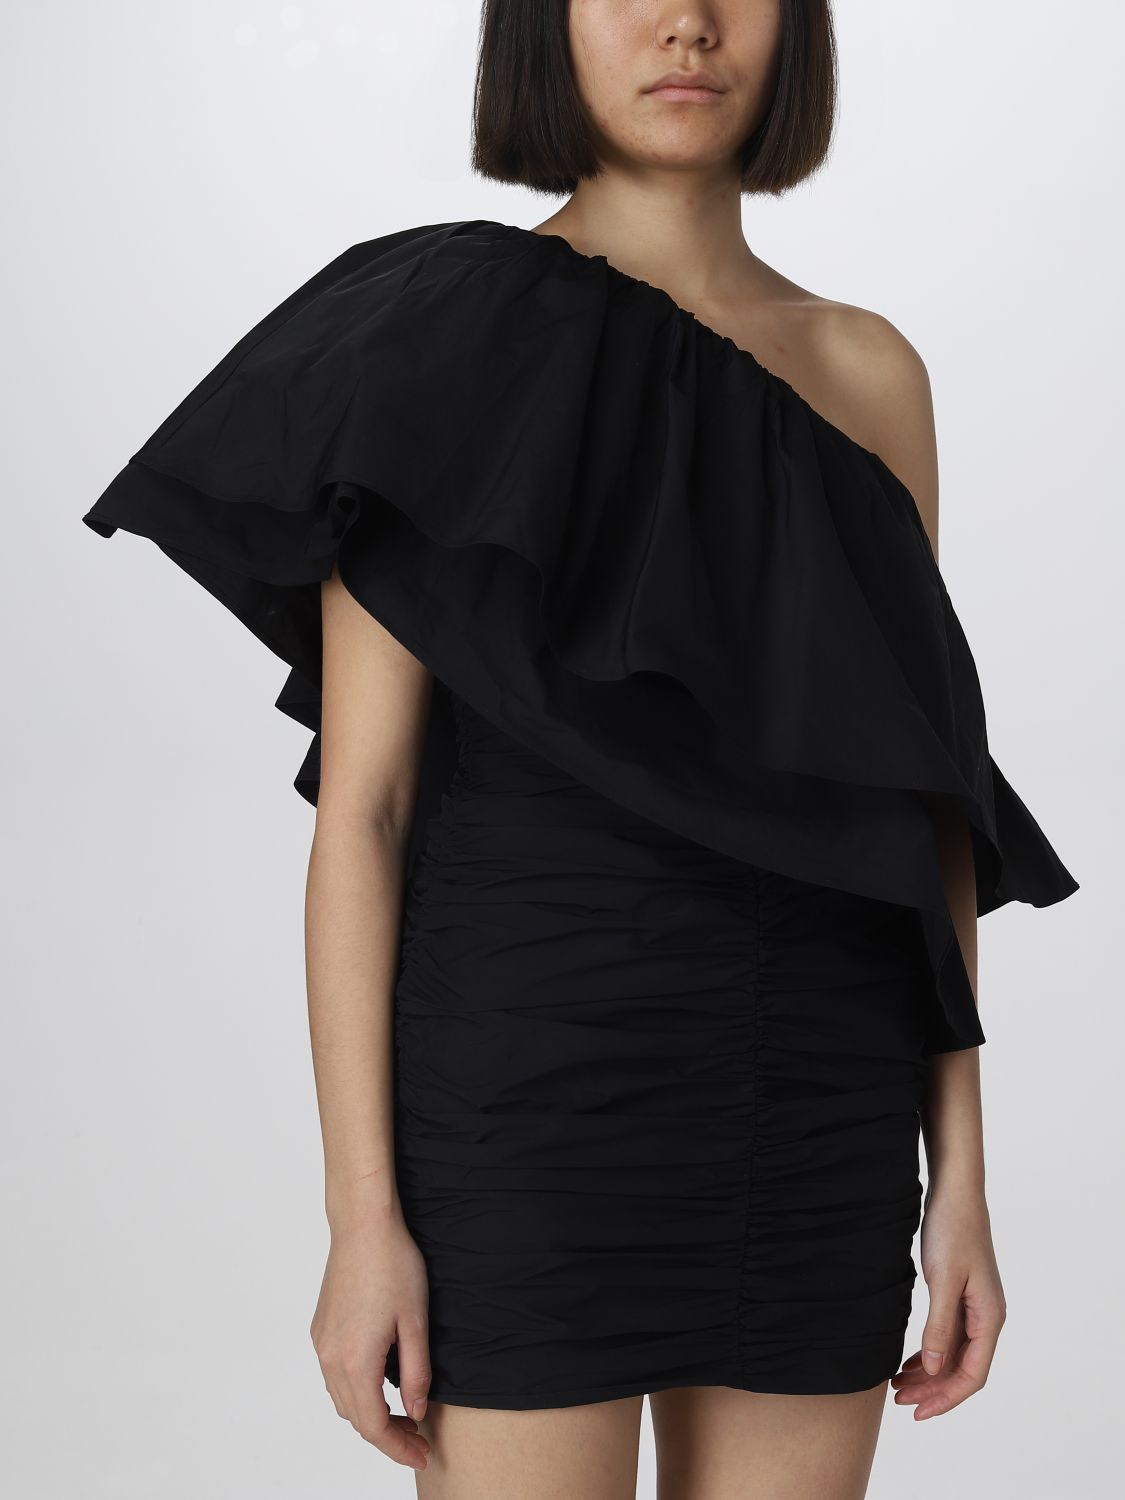 드레스 로테이트: 드레스 Rotate 여성 블랙 3